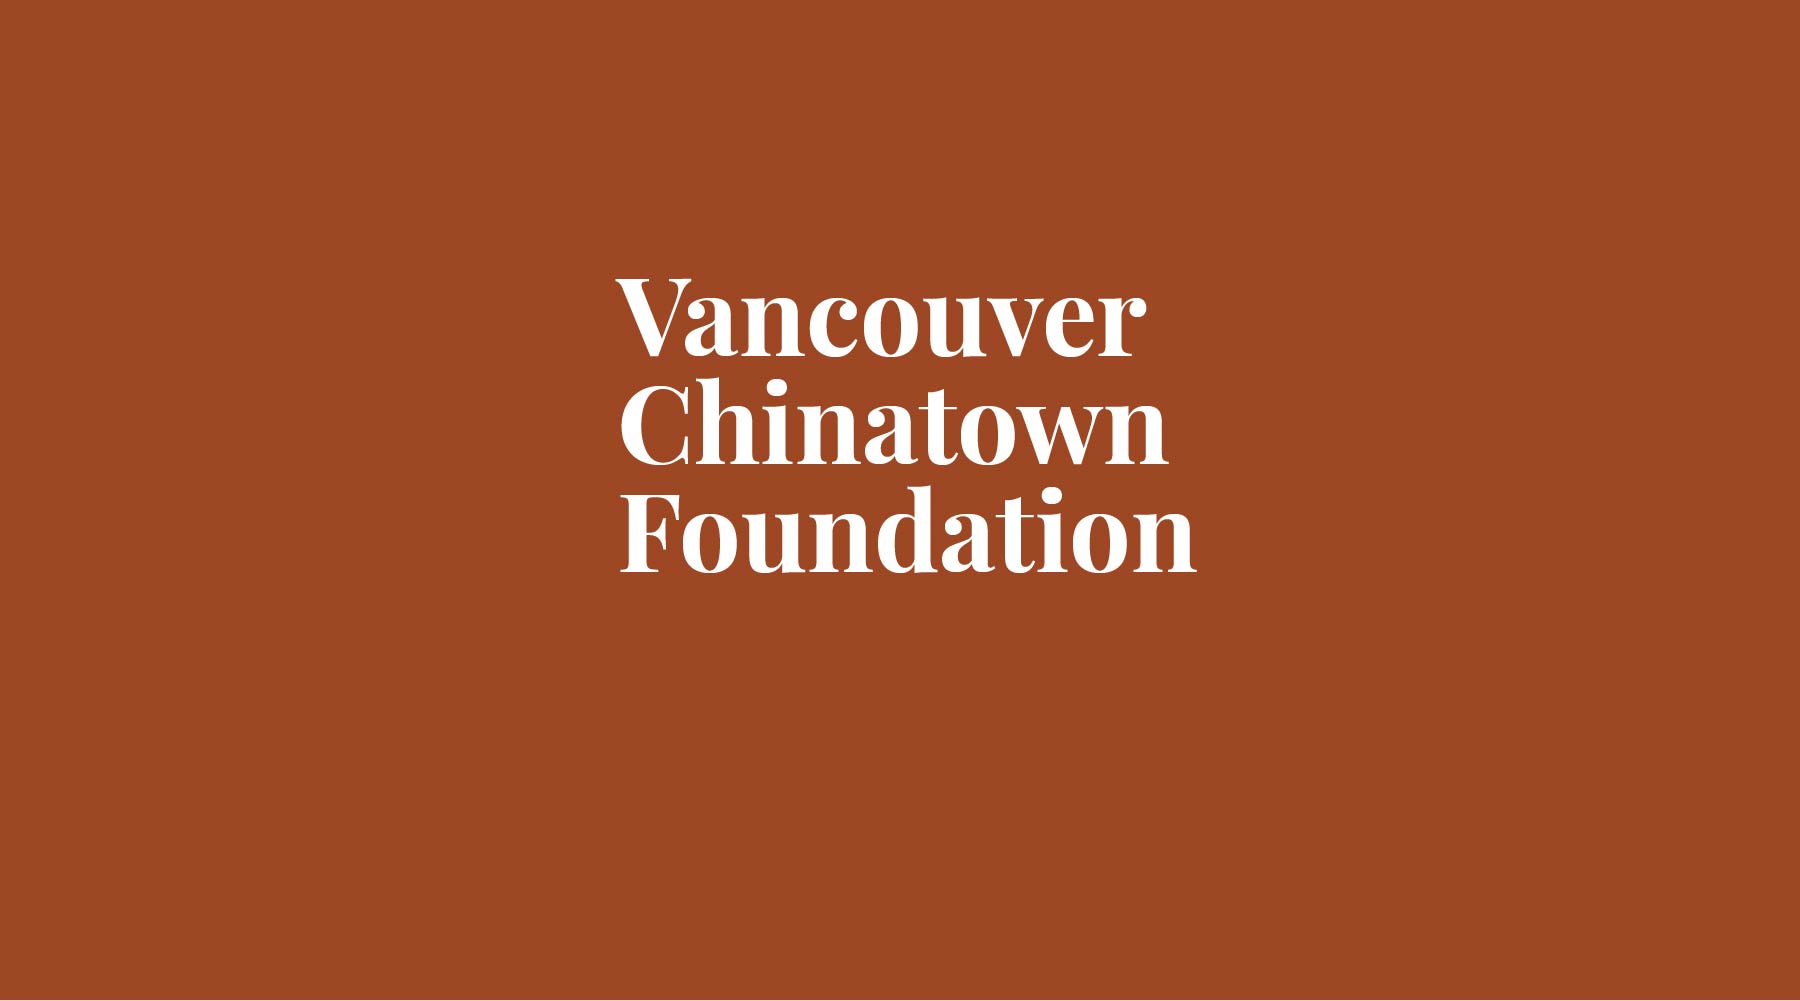 Our April Non-Profit - Vancouver Chinatown Foundation